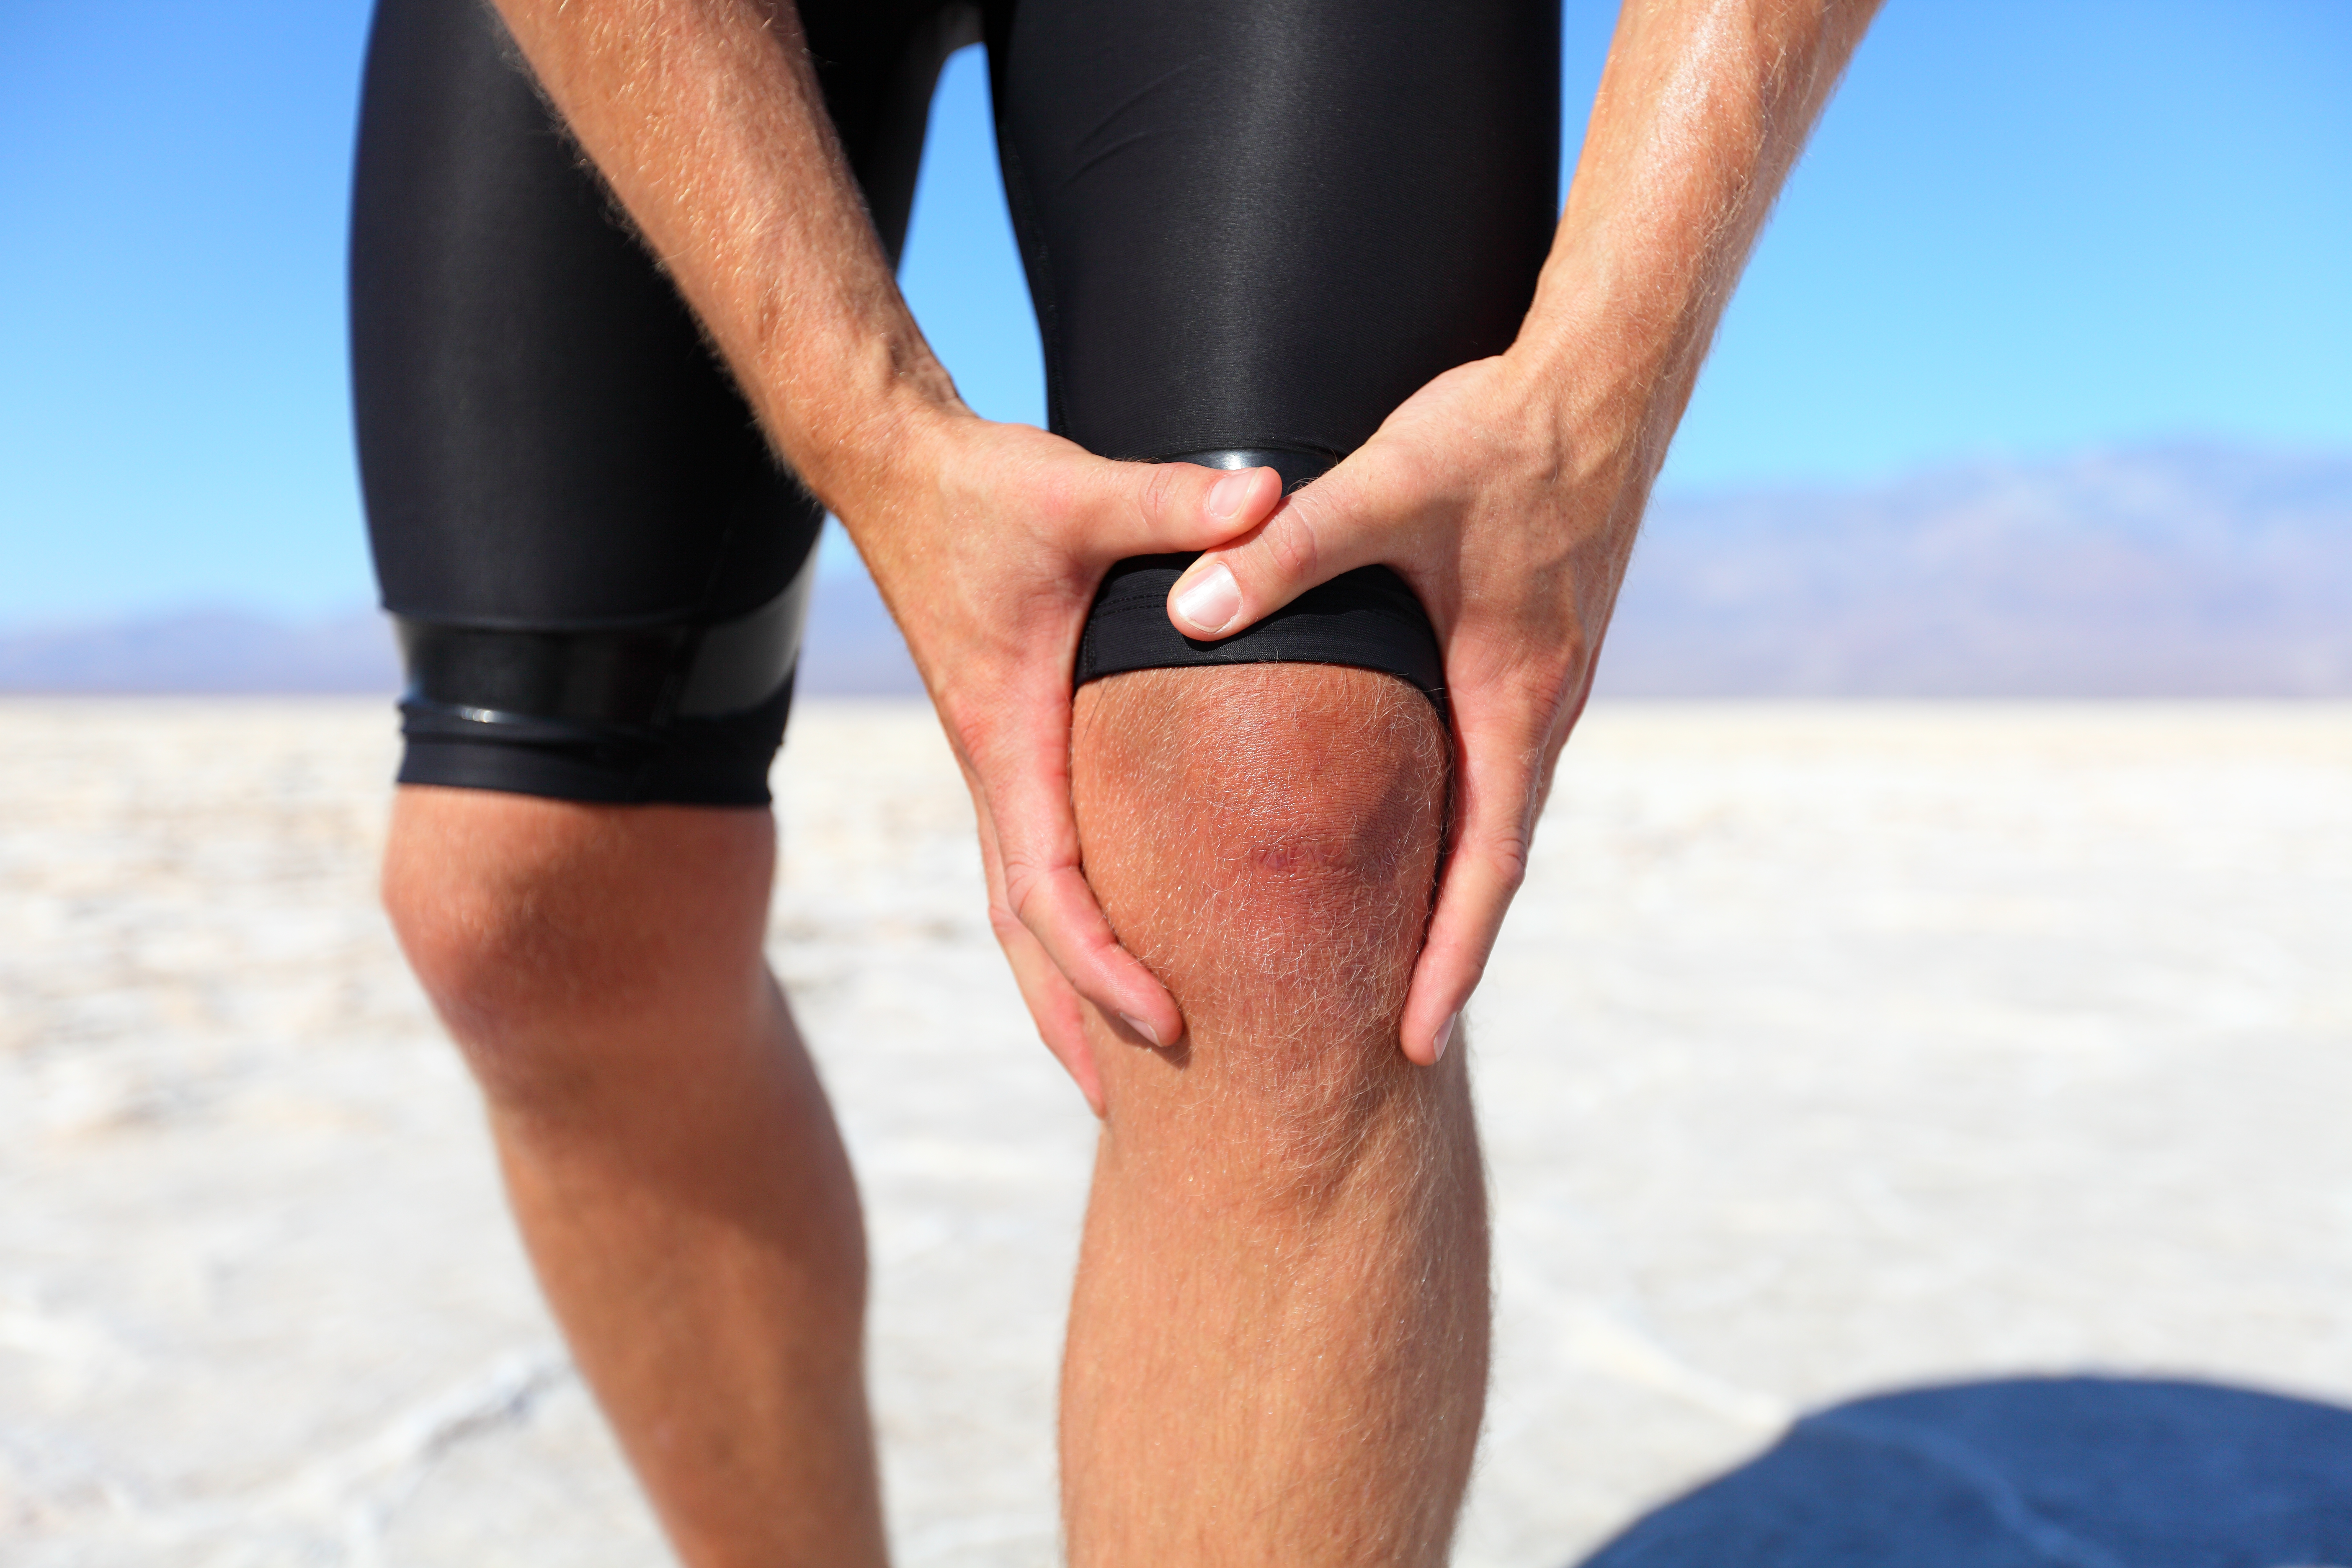 Injuries - sports running knee injury on man